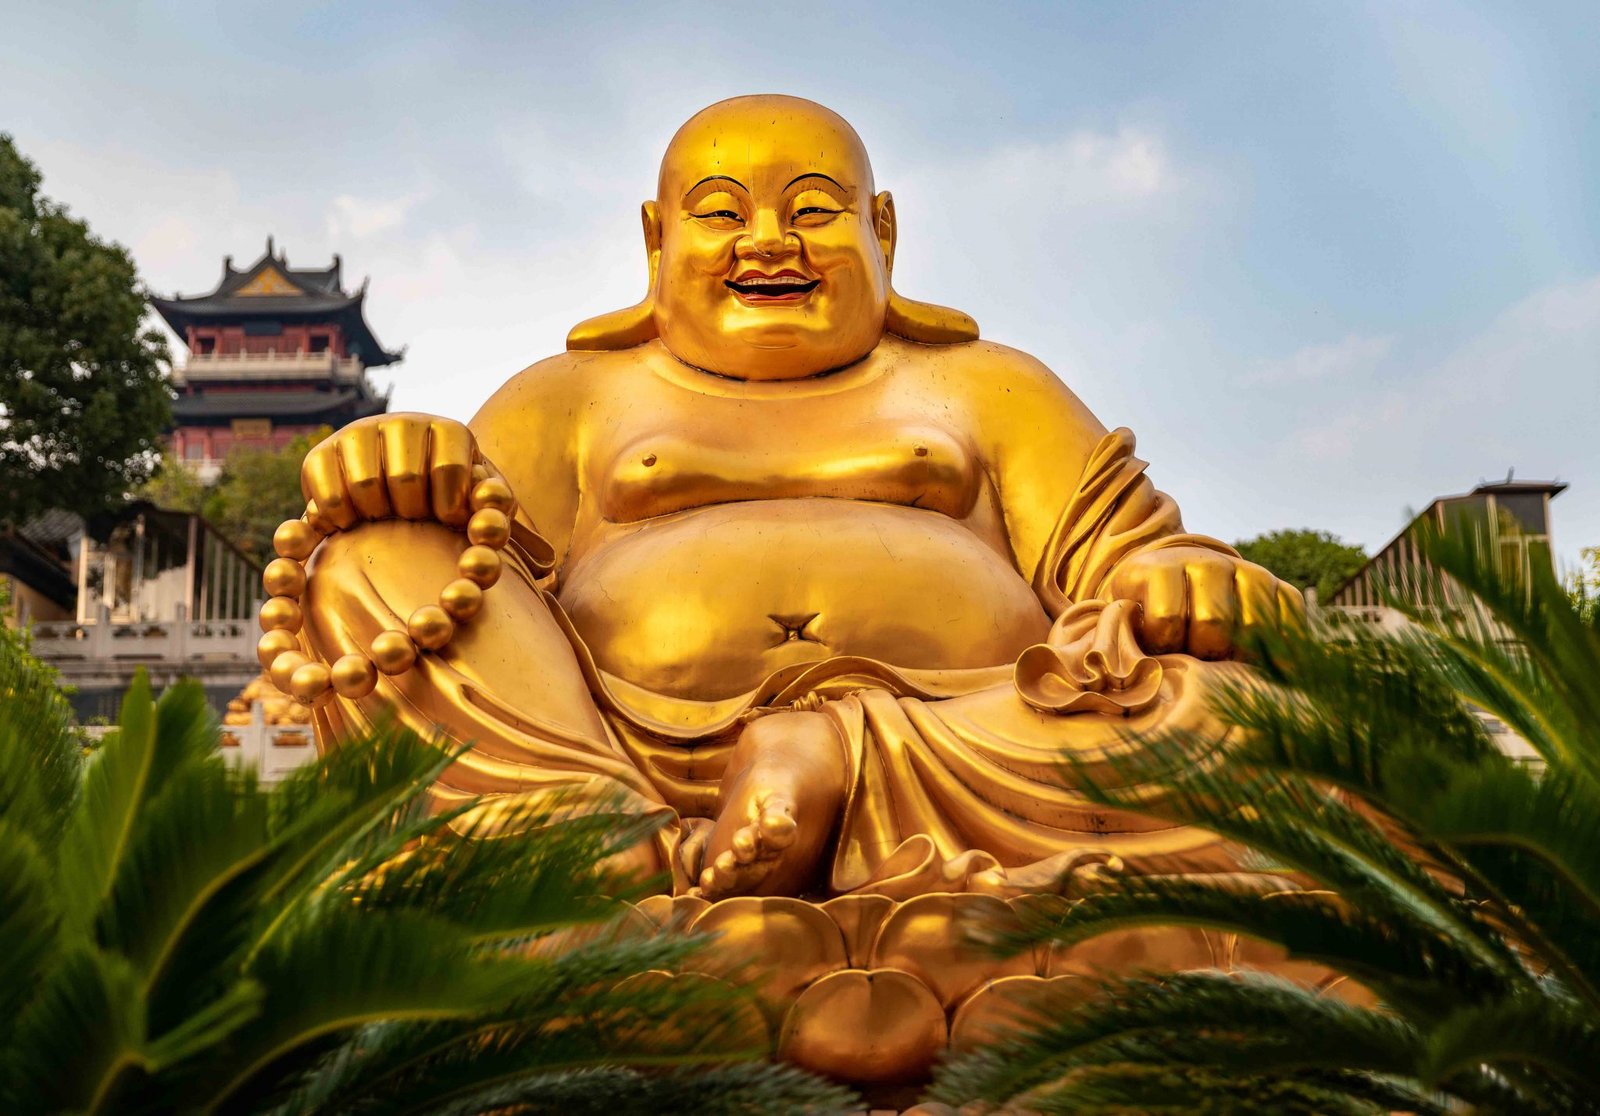 "The Laughing Buddha" The Stupa